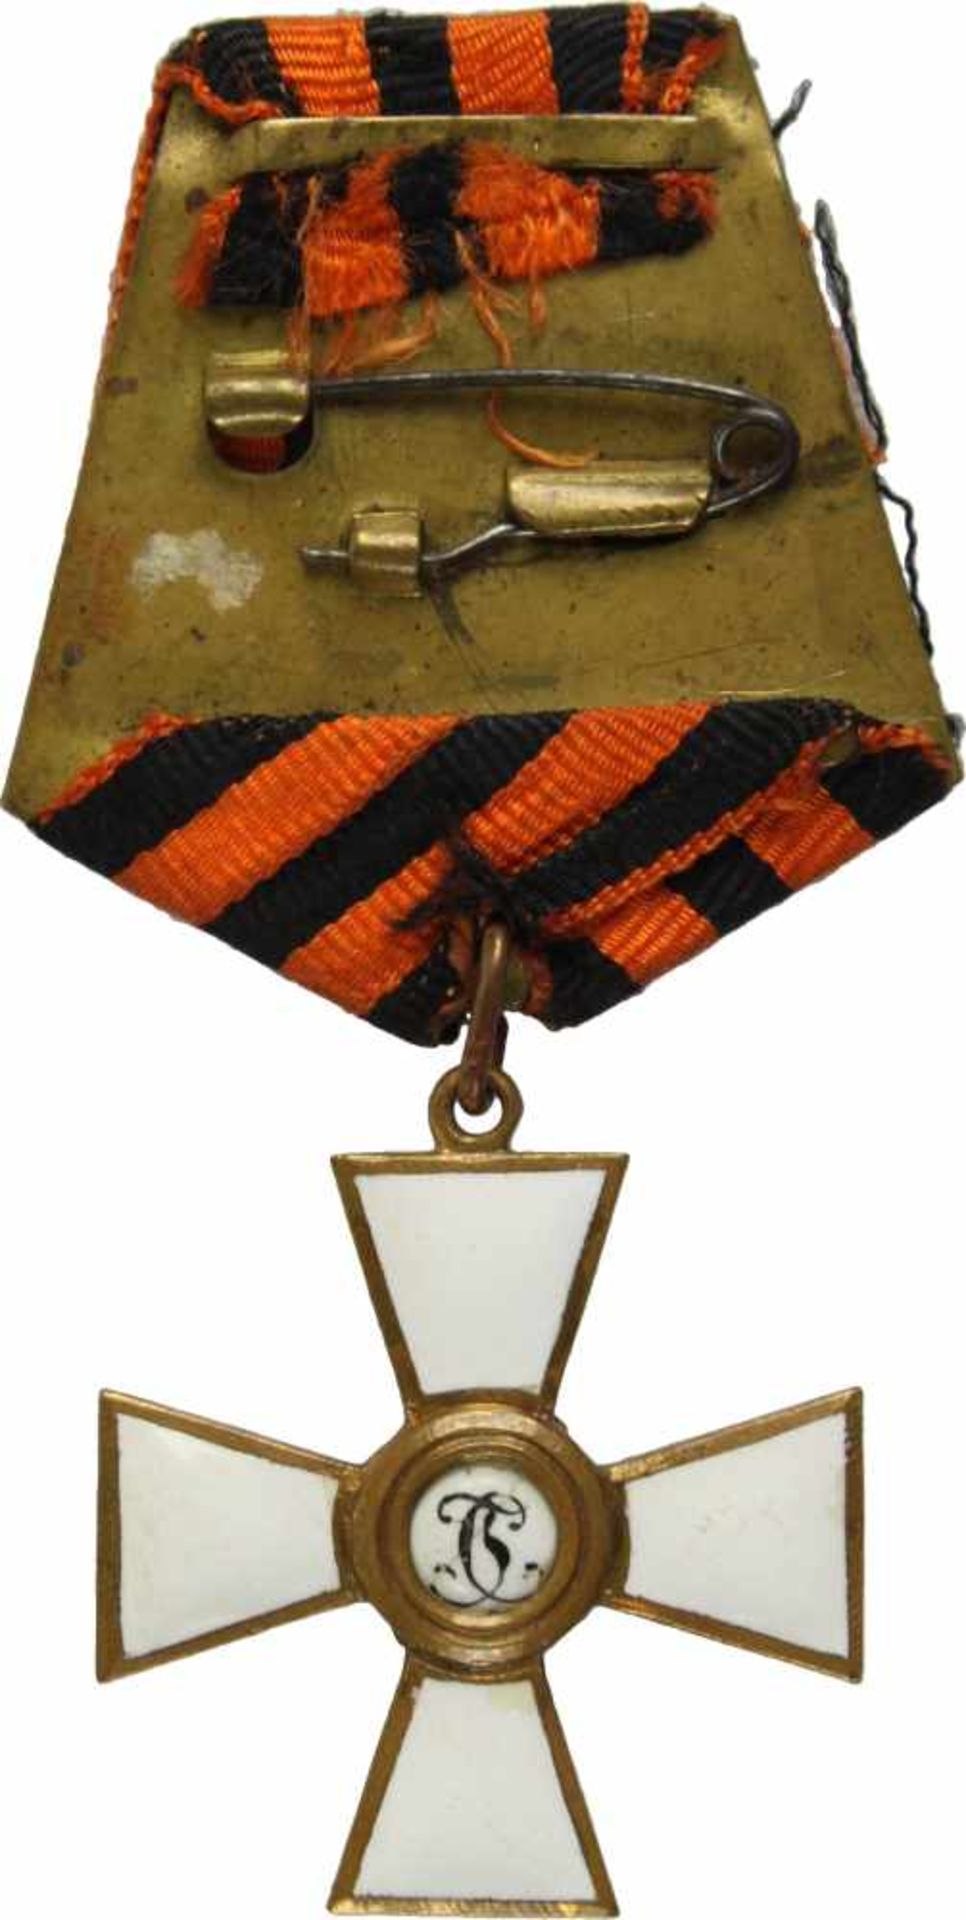 St. Georgs-Orden,Kreuz 4. Klasse. Kreuz Bronze vergoldet und emailliert, 36mm, gemaltes Medaillon - Bild 2 aus 2